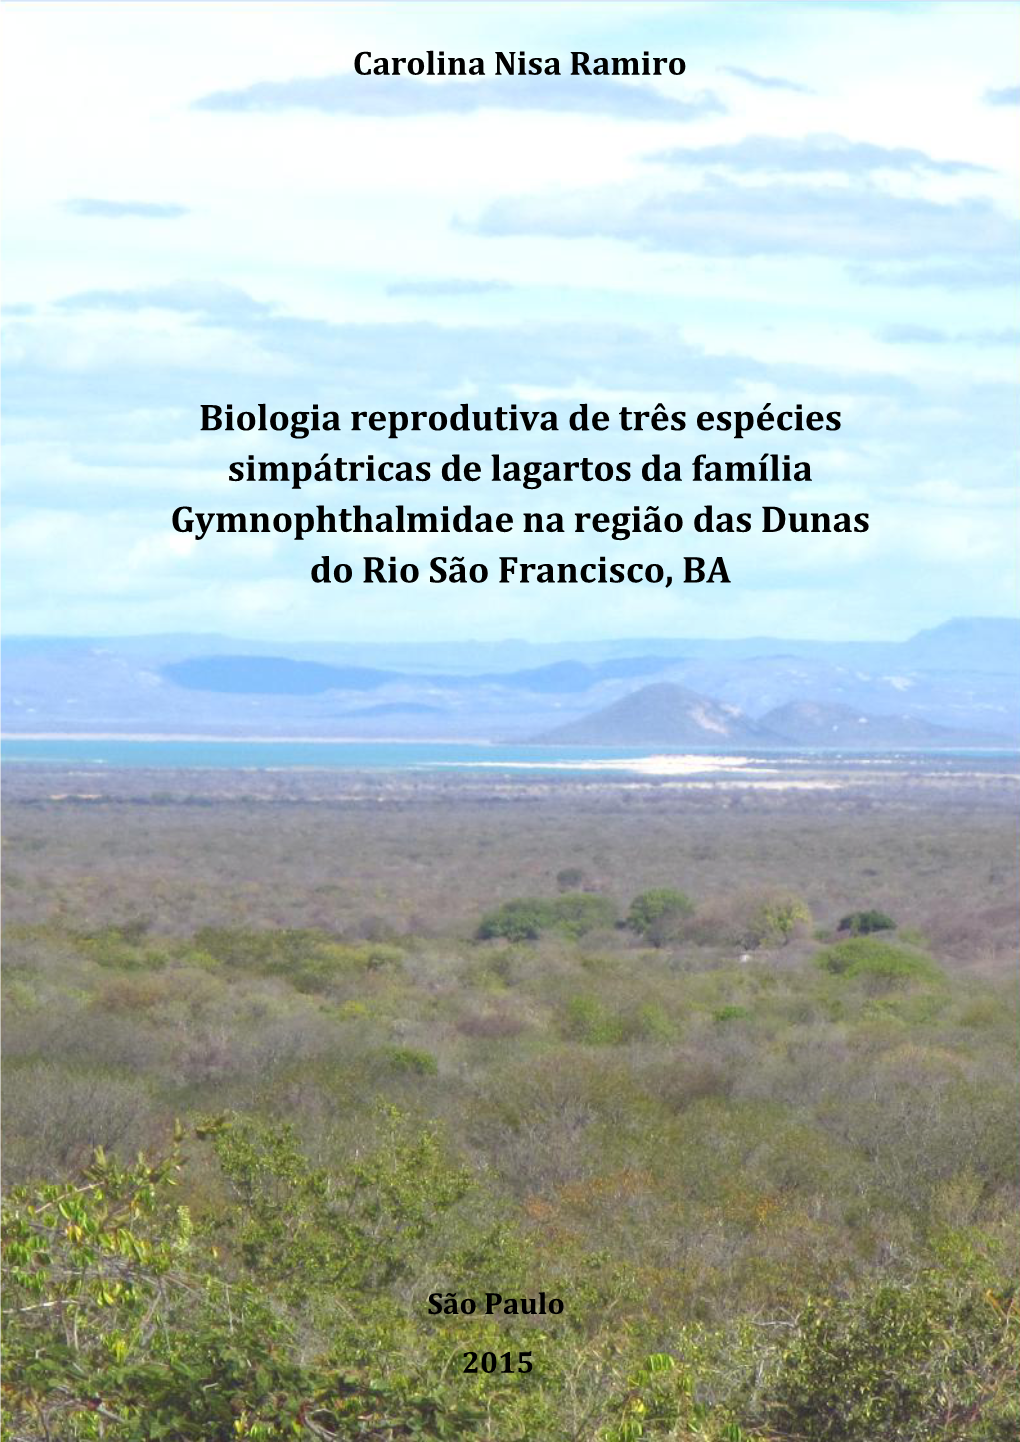 Biologia Reprodutiva De Três Espécies Simpátricas De Lagartos Da Família Gymnophthalmidae Na Região Das Dunas Do Rio São Francisco, BA